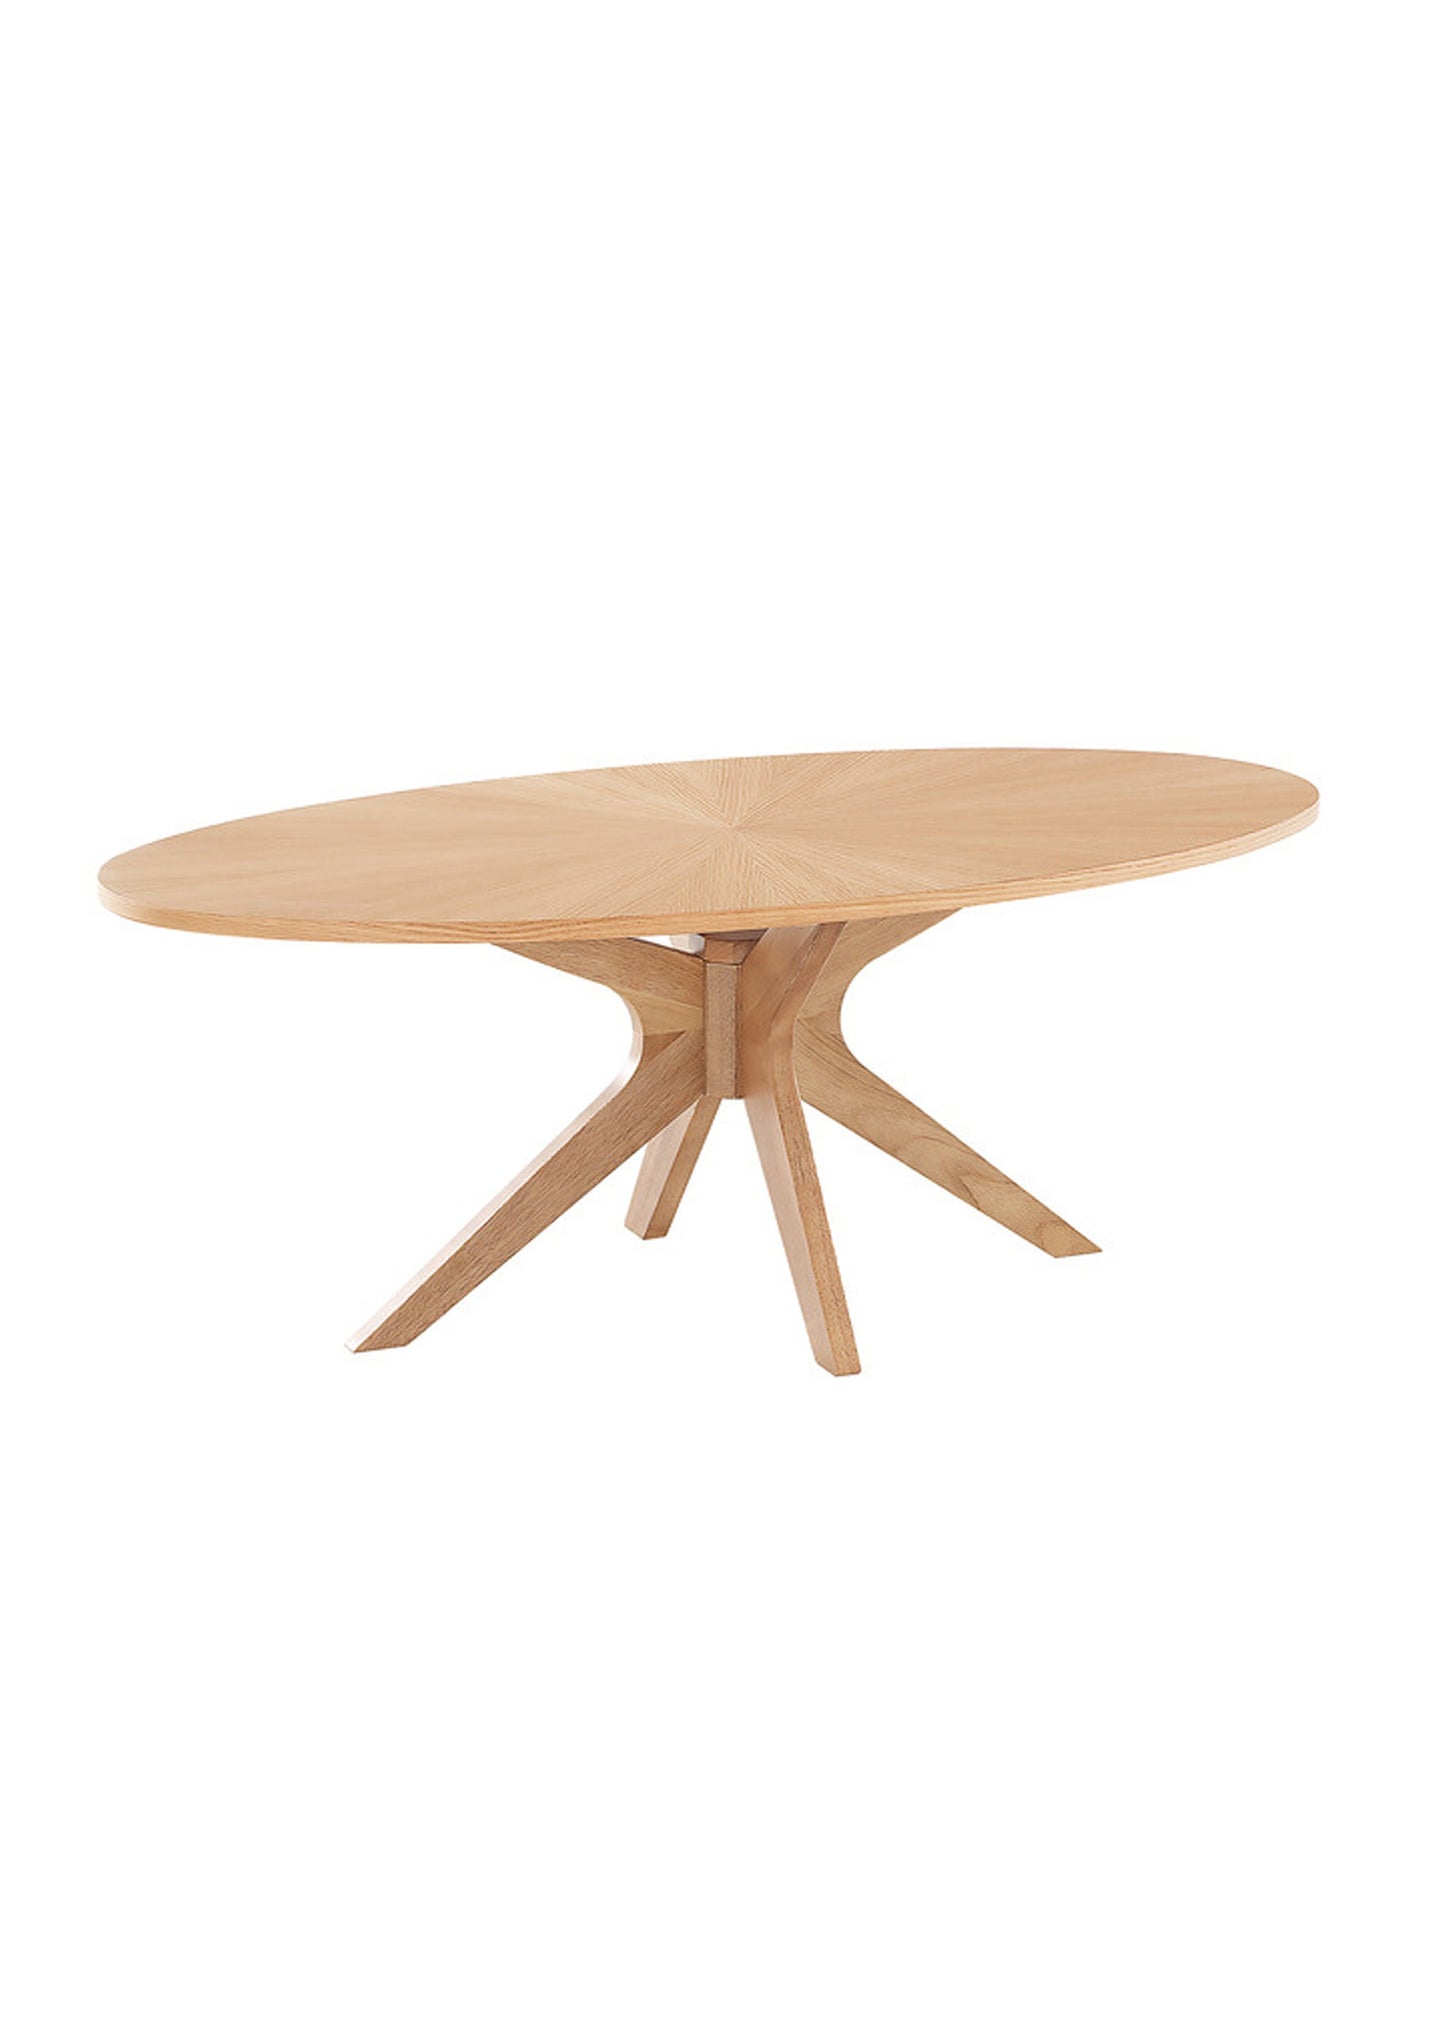 Scandinavian Style Oak Coffee Table